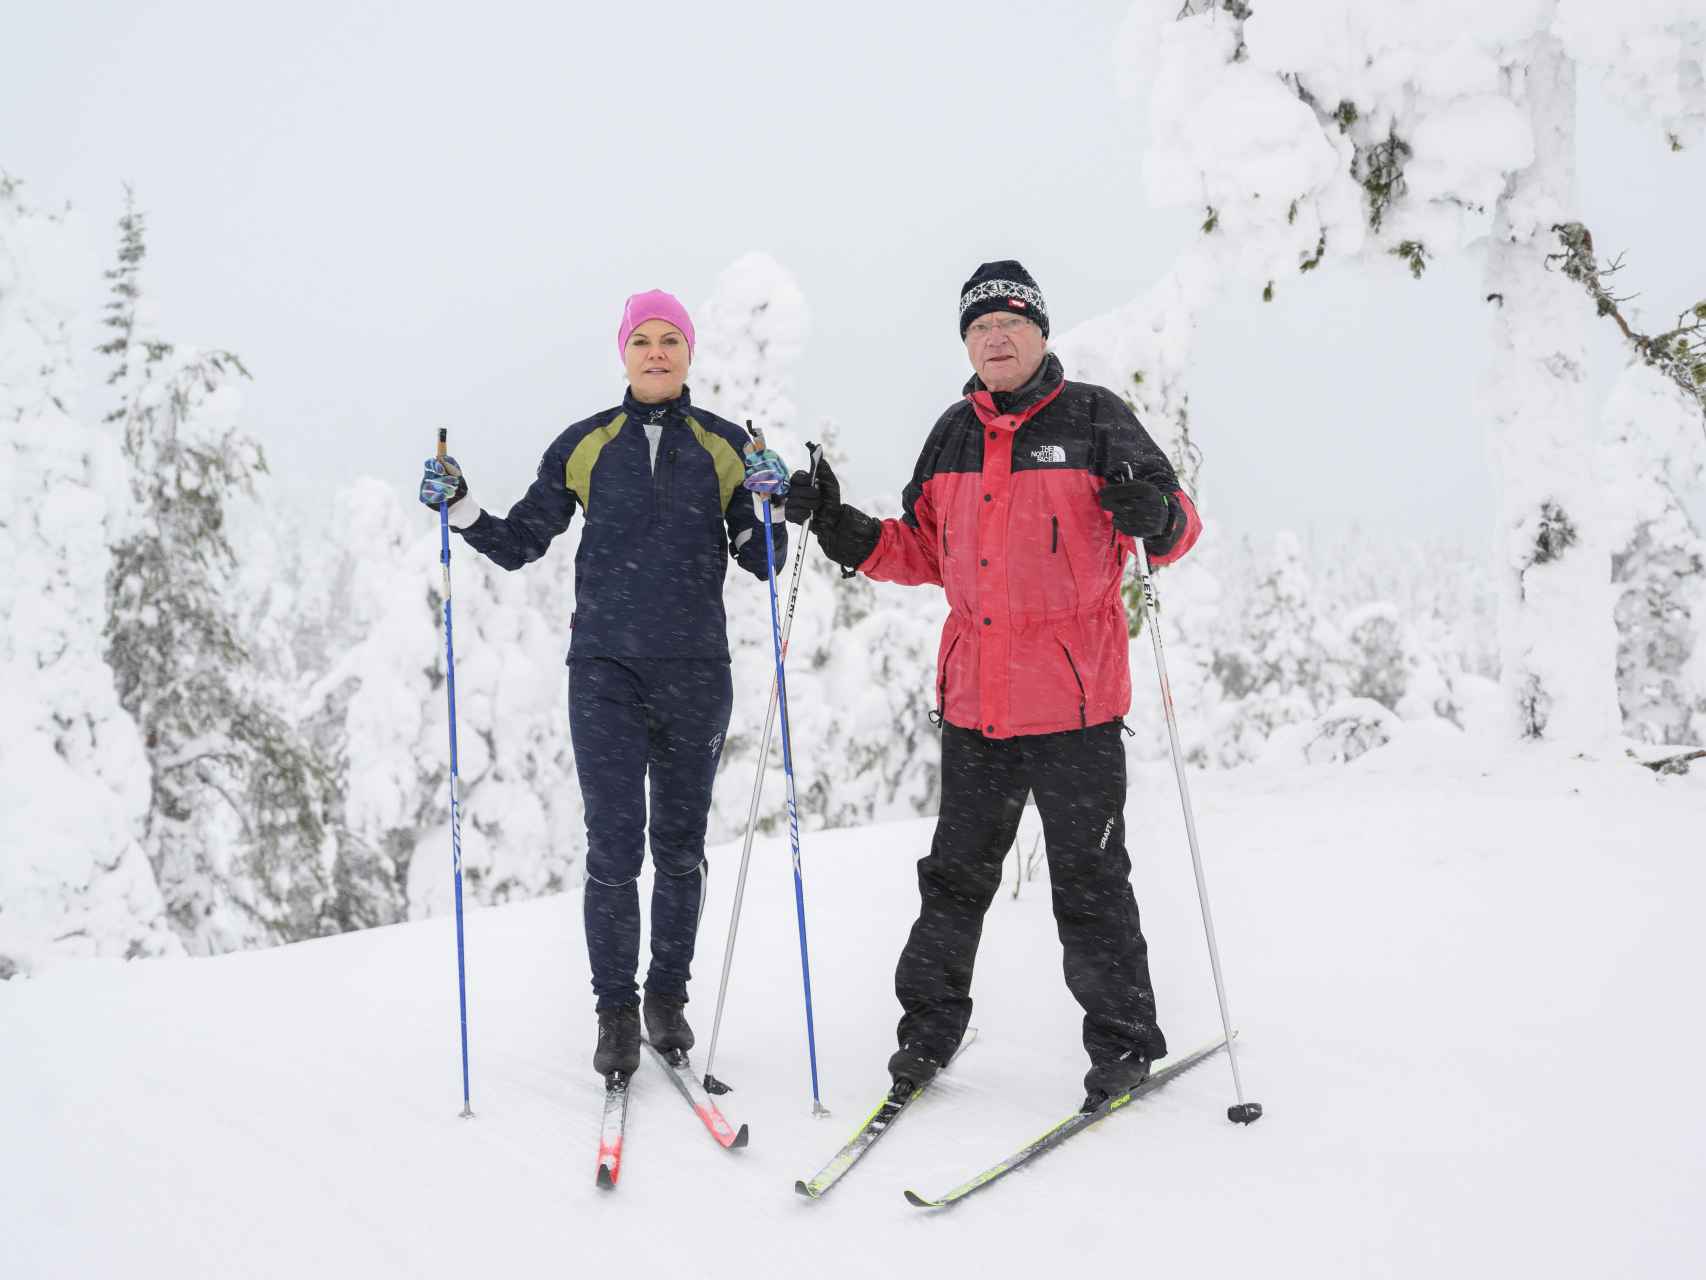 Victoria de Suecia y el Rey son dos grandes aficionados al esquí.